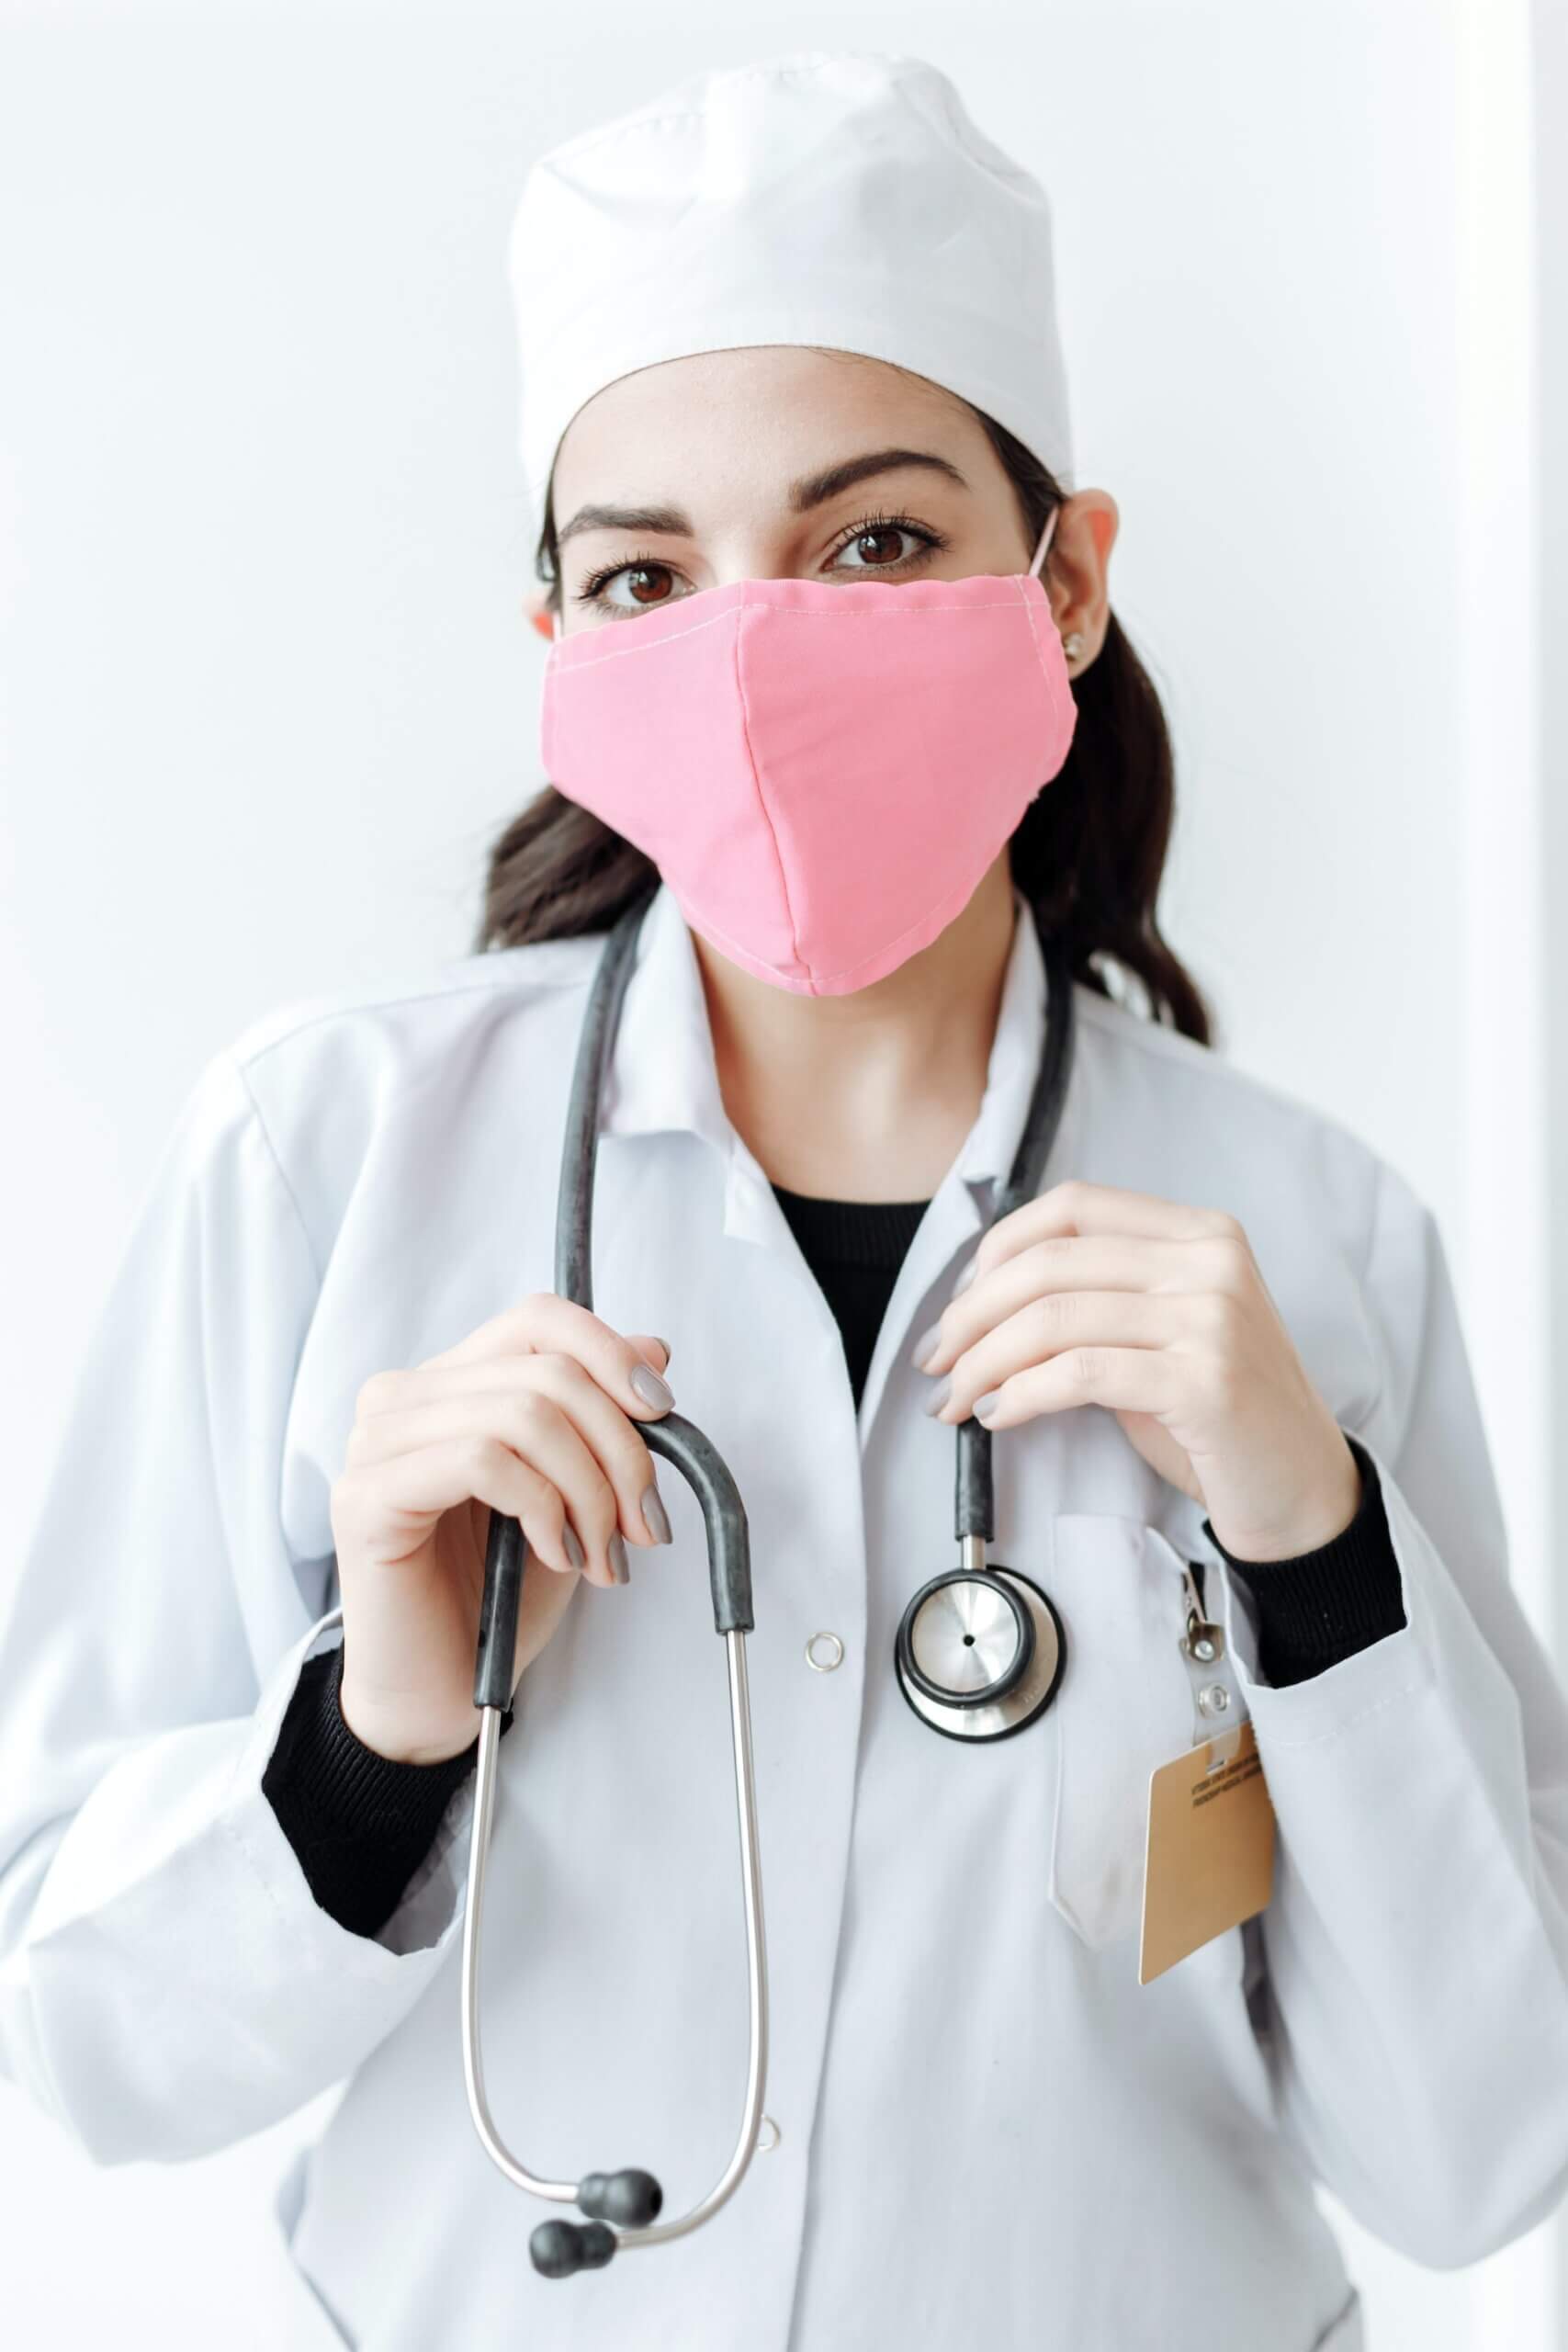 Infermiera donna con copricapo bianco, mascherina rosa, camice bianco, stetoscopio al collo e tesserino sulla tasca alta del camice che guarda dritto nell'obbiettivo della fotocamera.